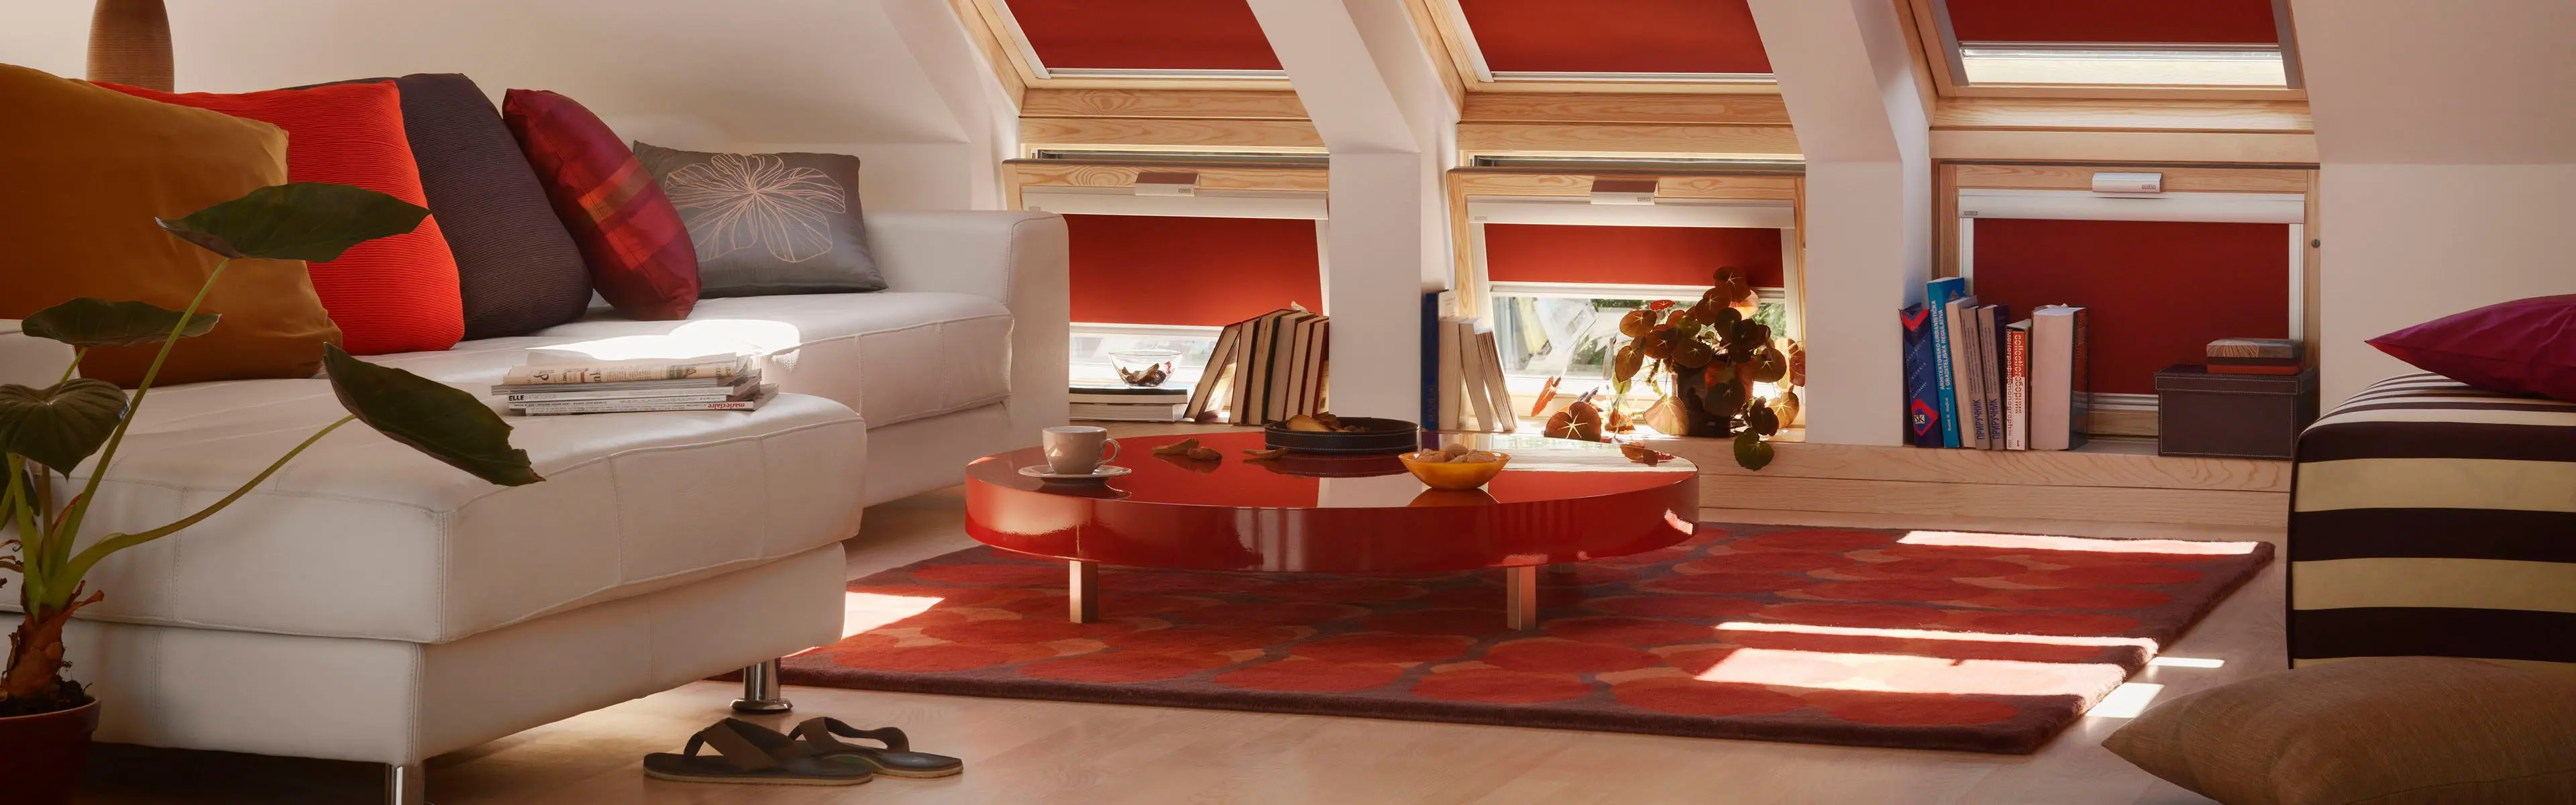 stue med sofa og mange takvinduer med rødfarget solskjerming